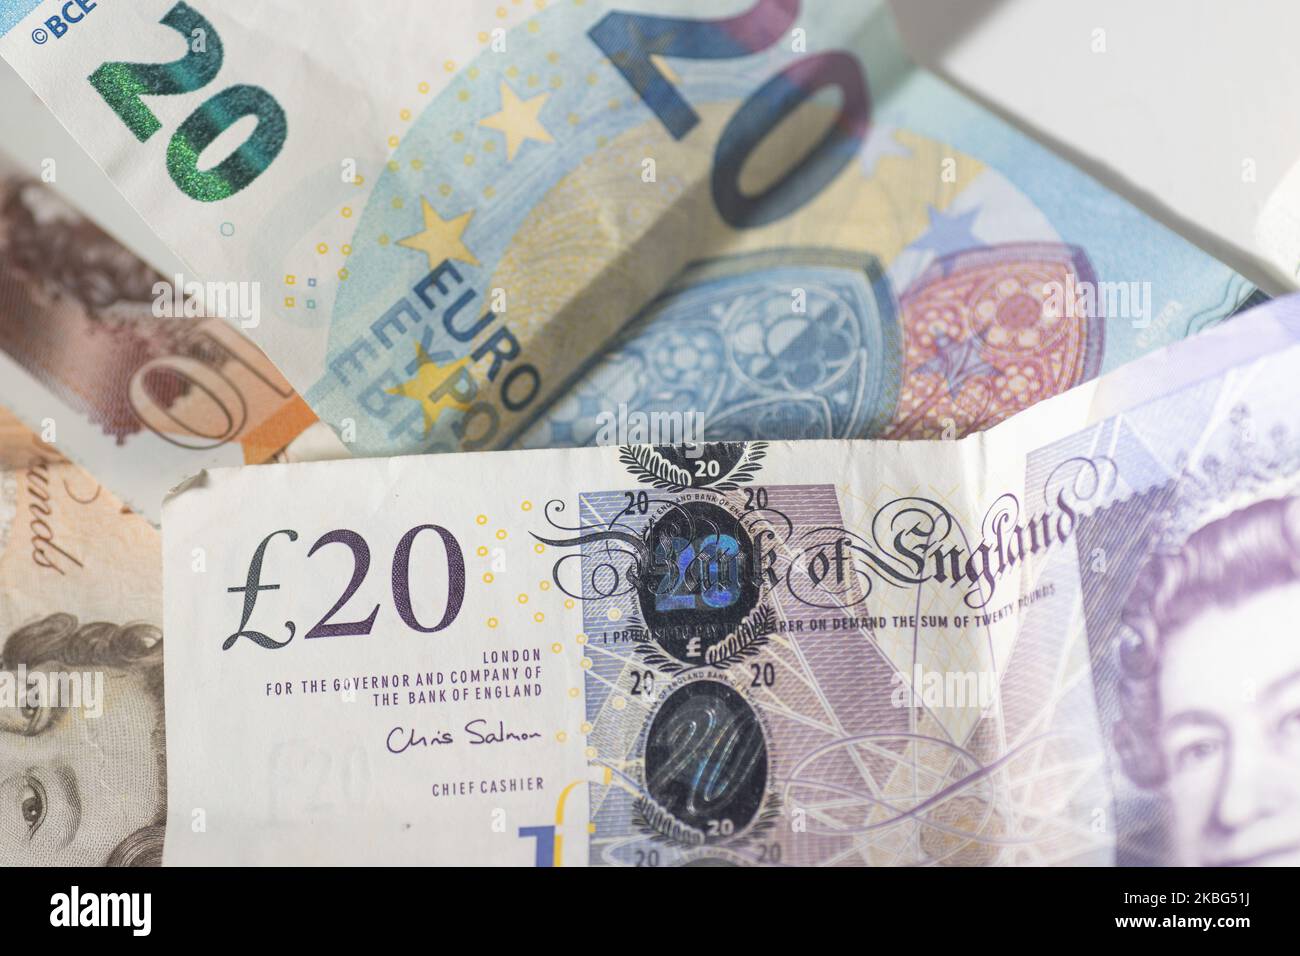 Moneda, tipo de cambio, ilustración de la foto mezcla de dinero, libras  esterlinas / libras esterlinas GBP y euros EUR billetes de papel y moneda  en primer plano fotos después del Brexit.